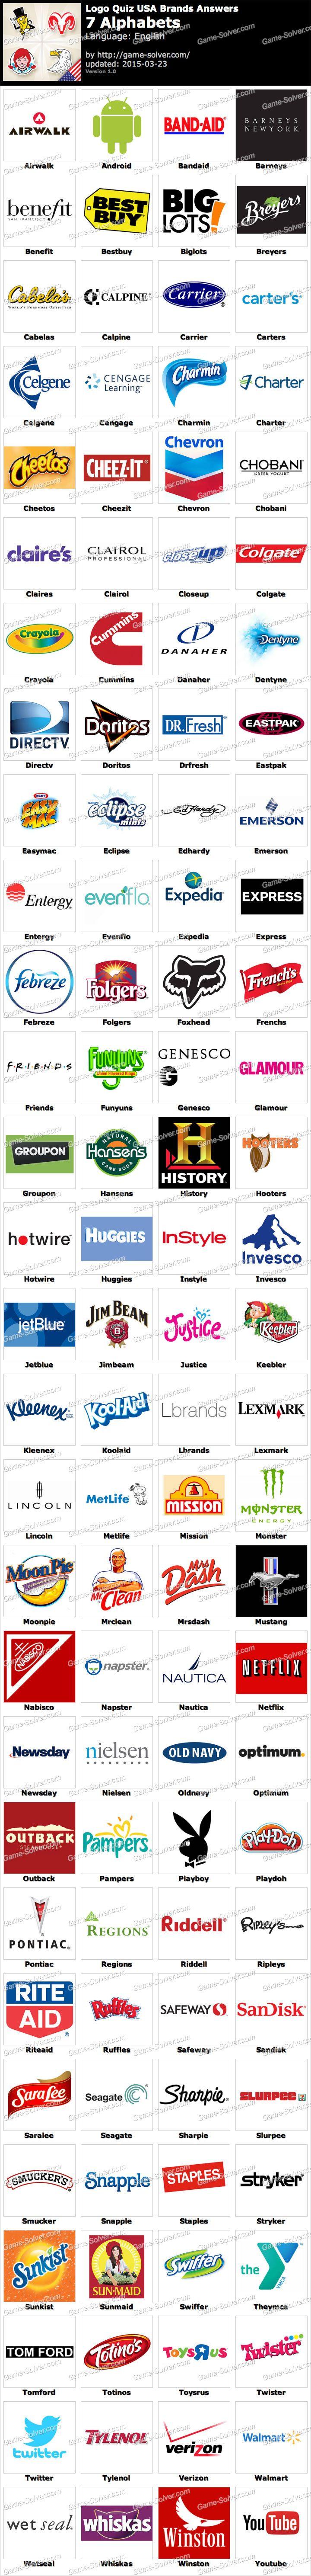 Alphabet Brands Logo - Logo Quiz USA Brands 7 Alphabets